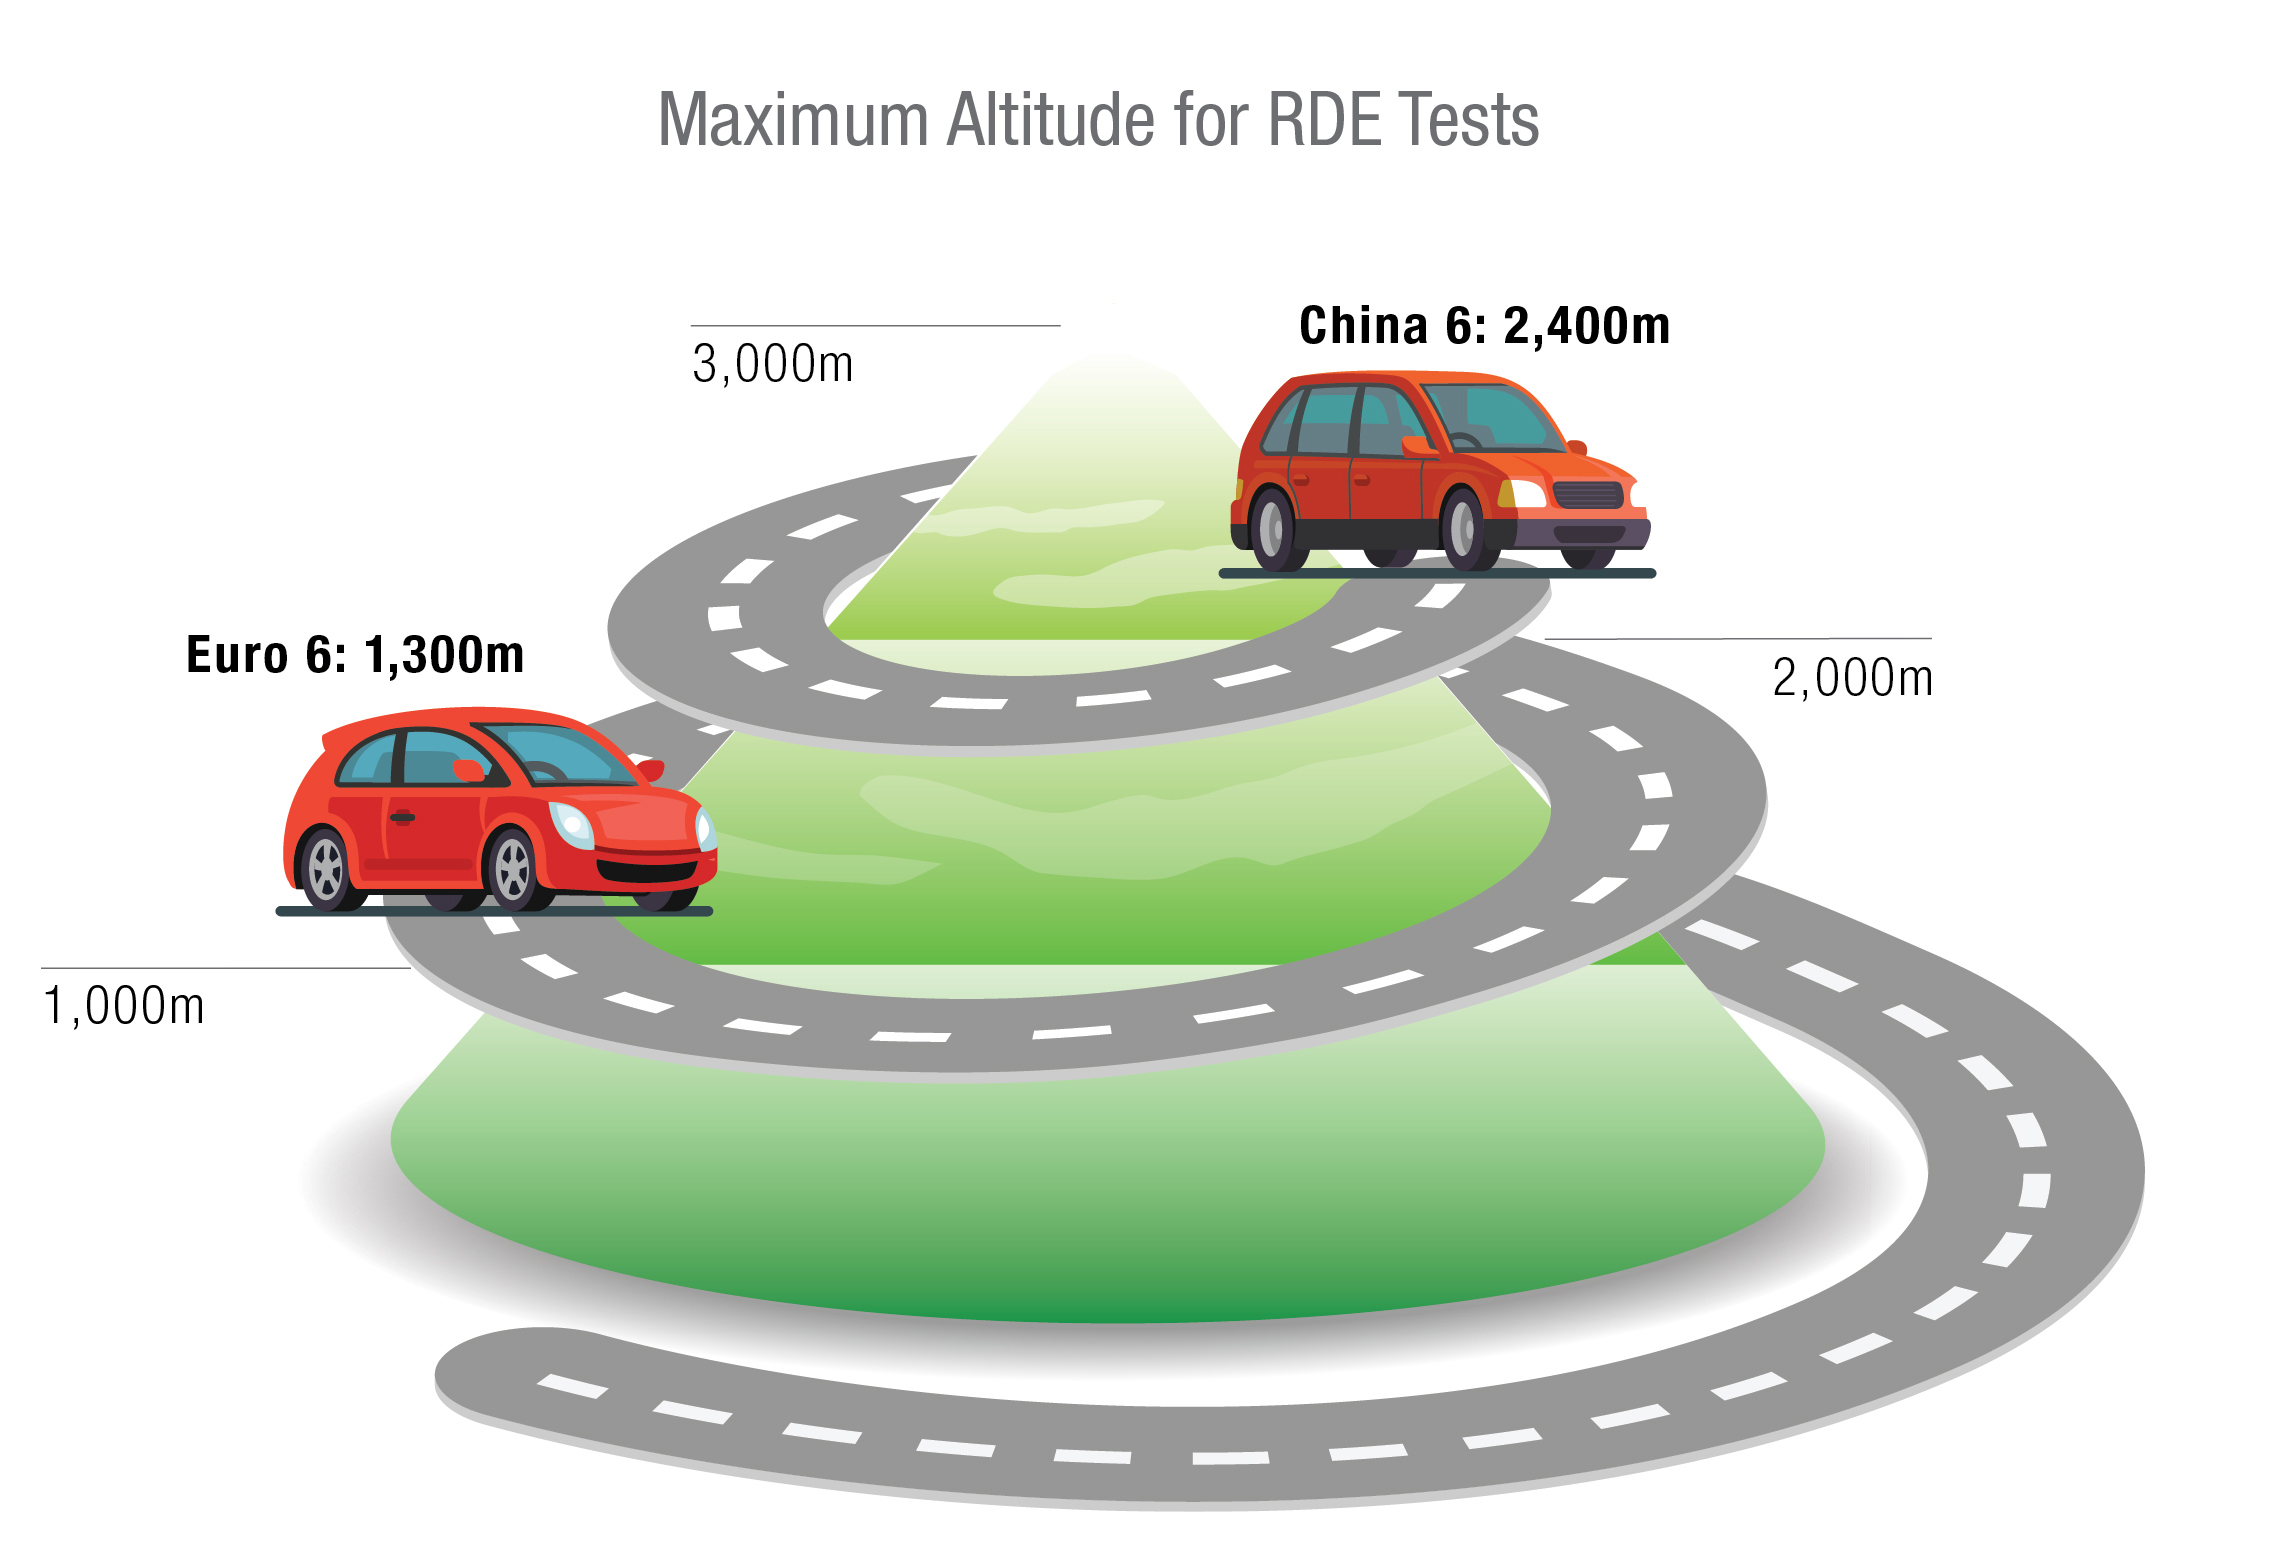 Maximum Altitude for RDE Tests